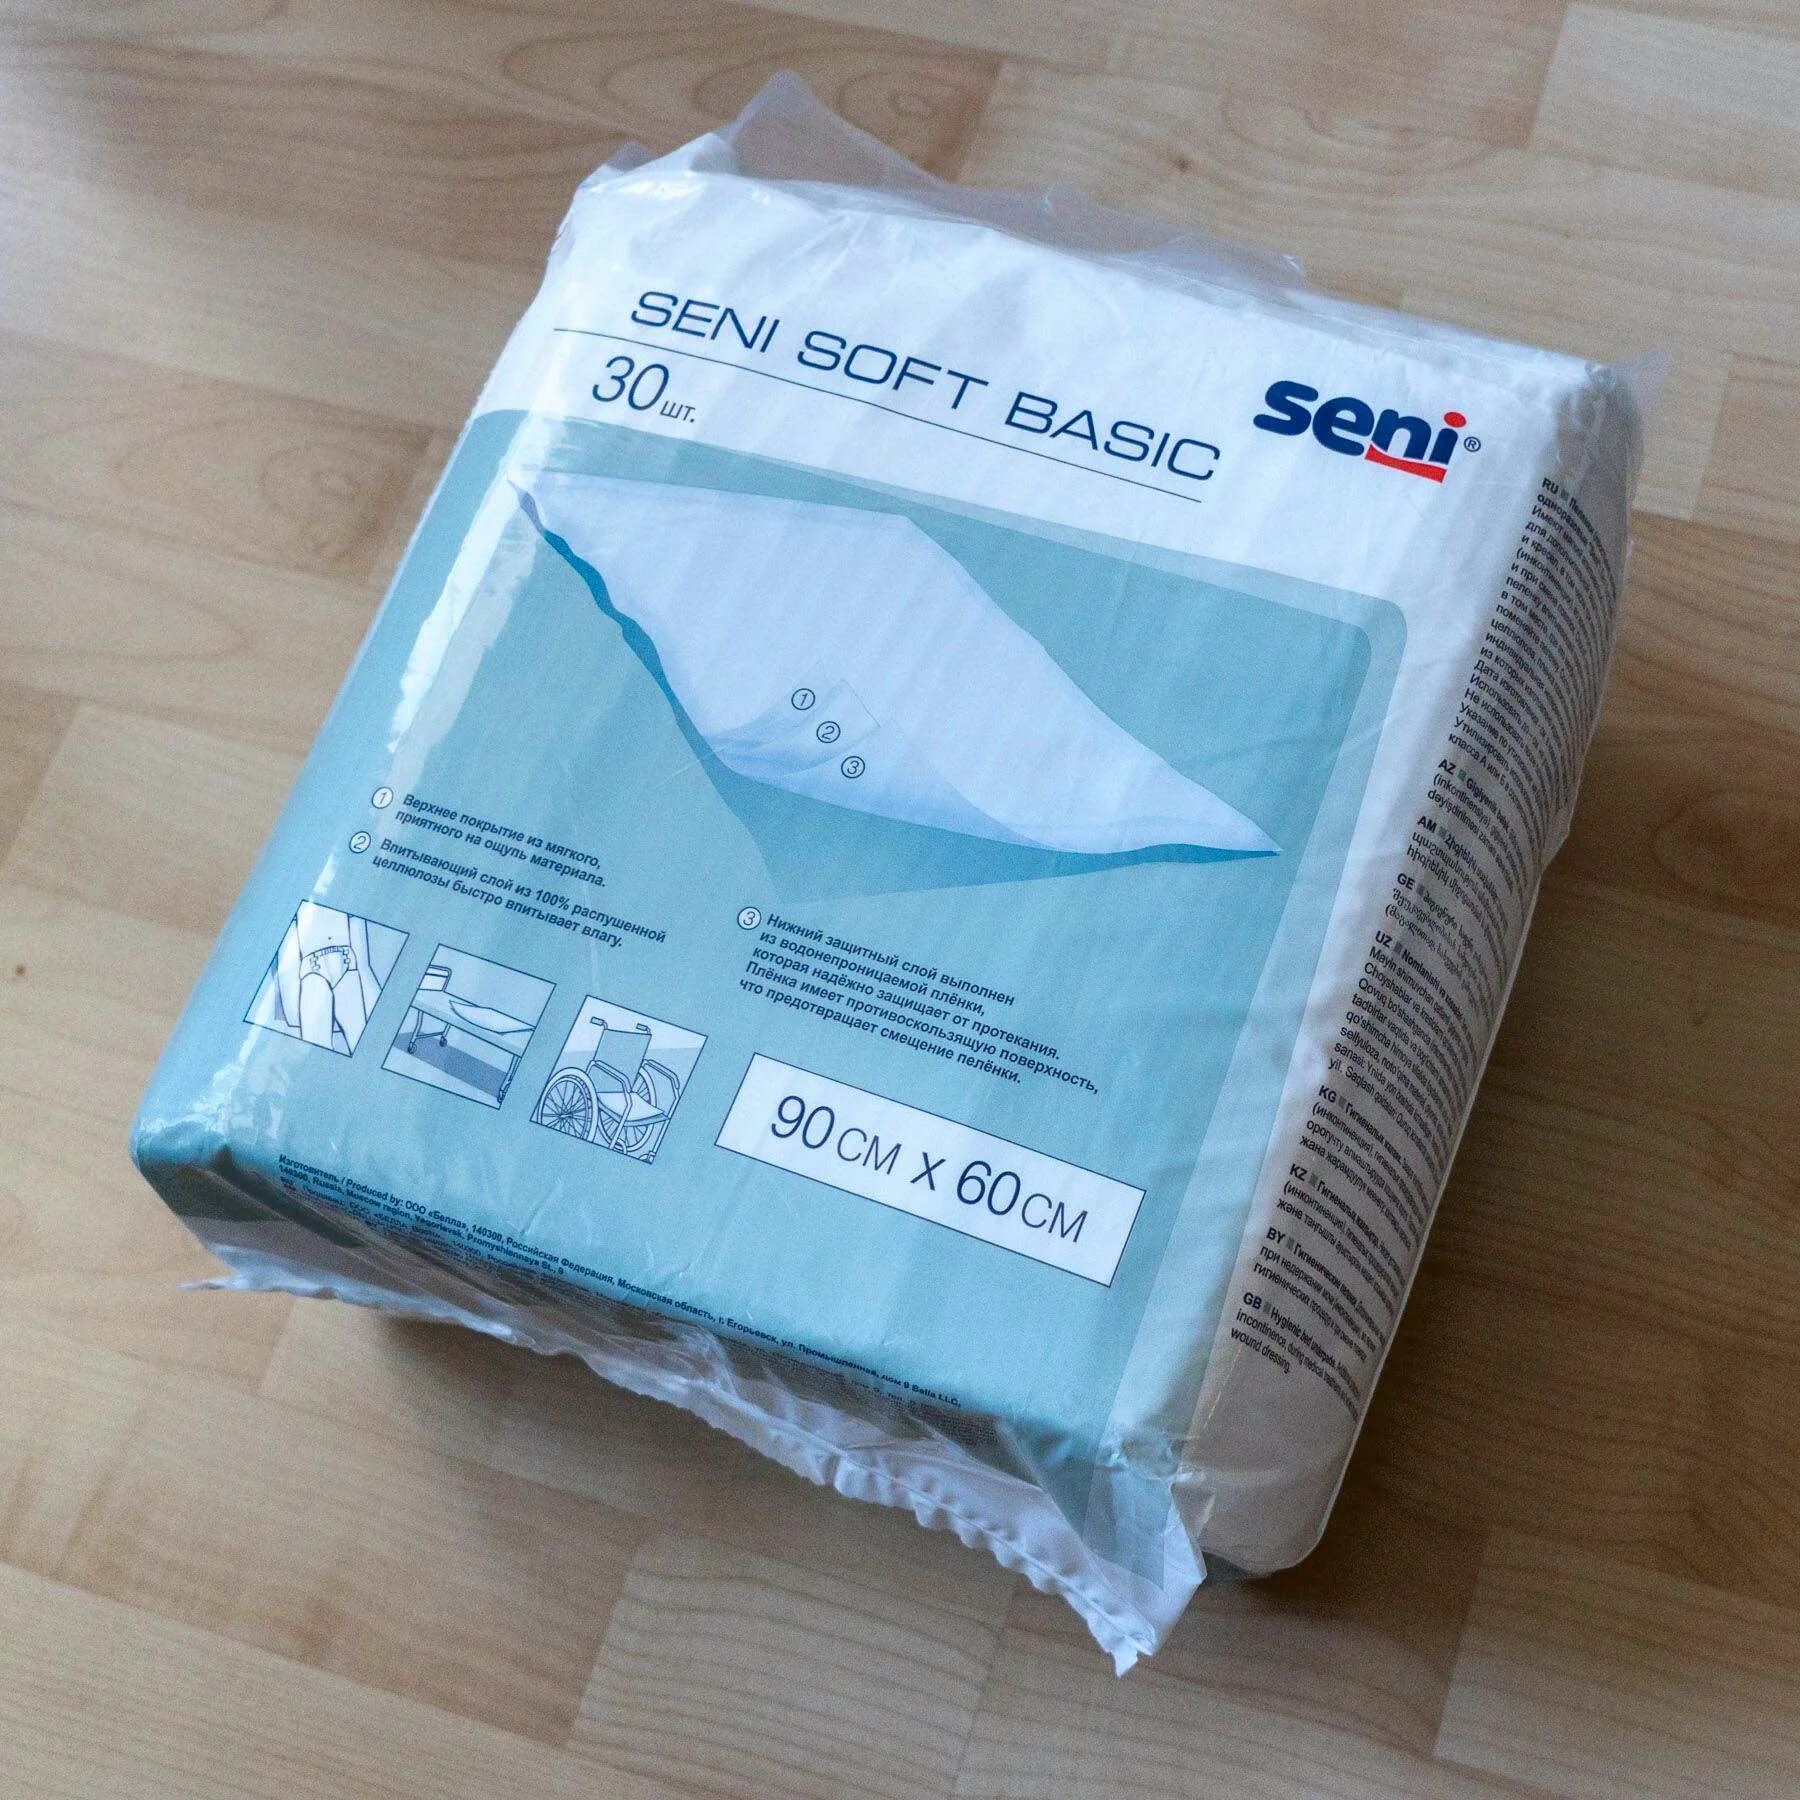 Пелёнки Seni Soft 90x60. Seni Soft Basic 90x60 зеленая упаковка. Разовые пеленки. Пеленки послеродовые одноразовые.